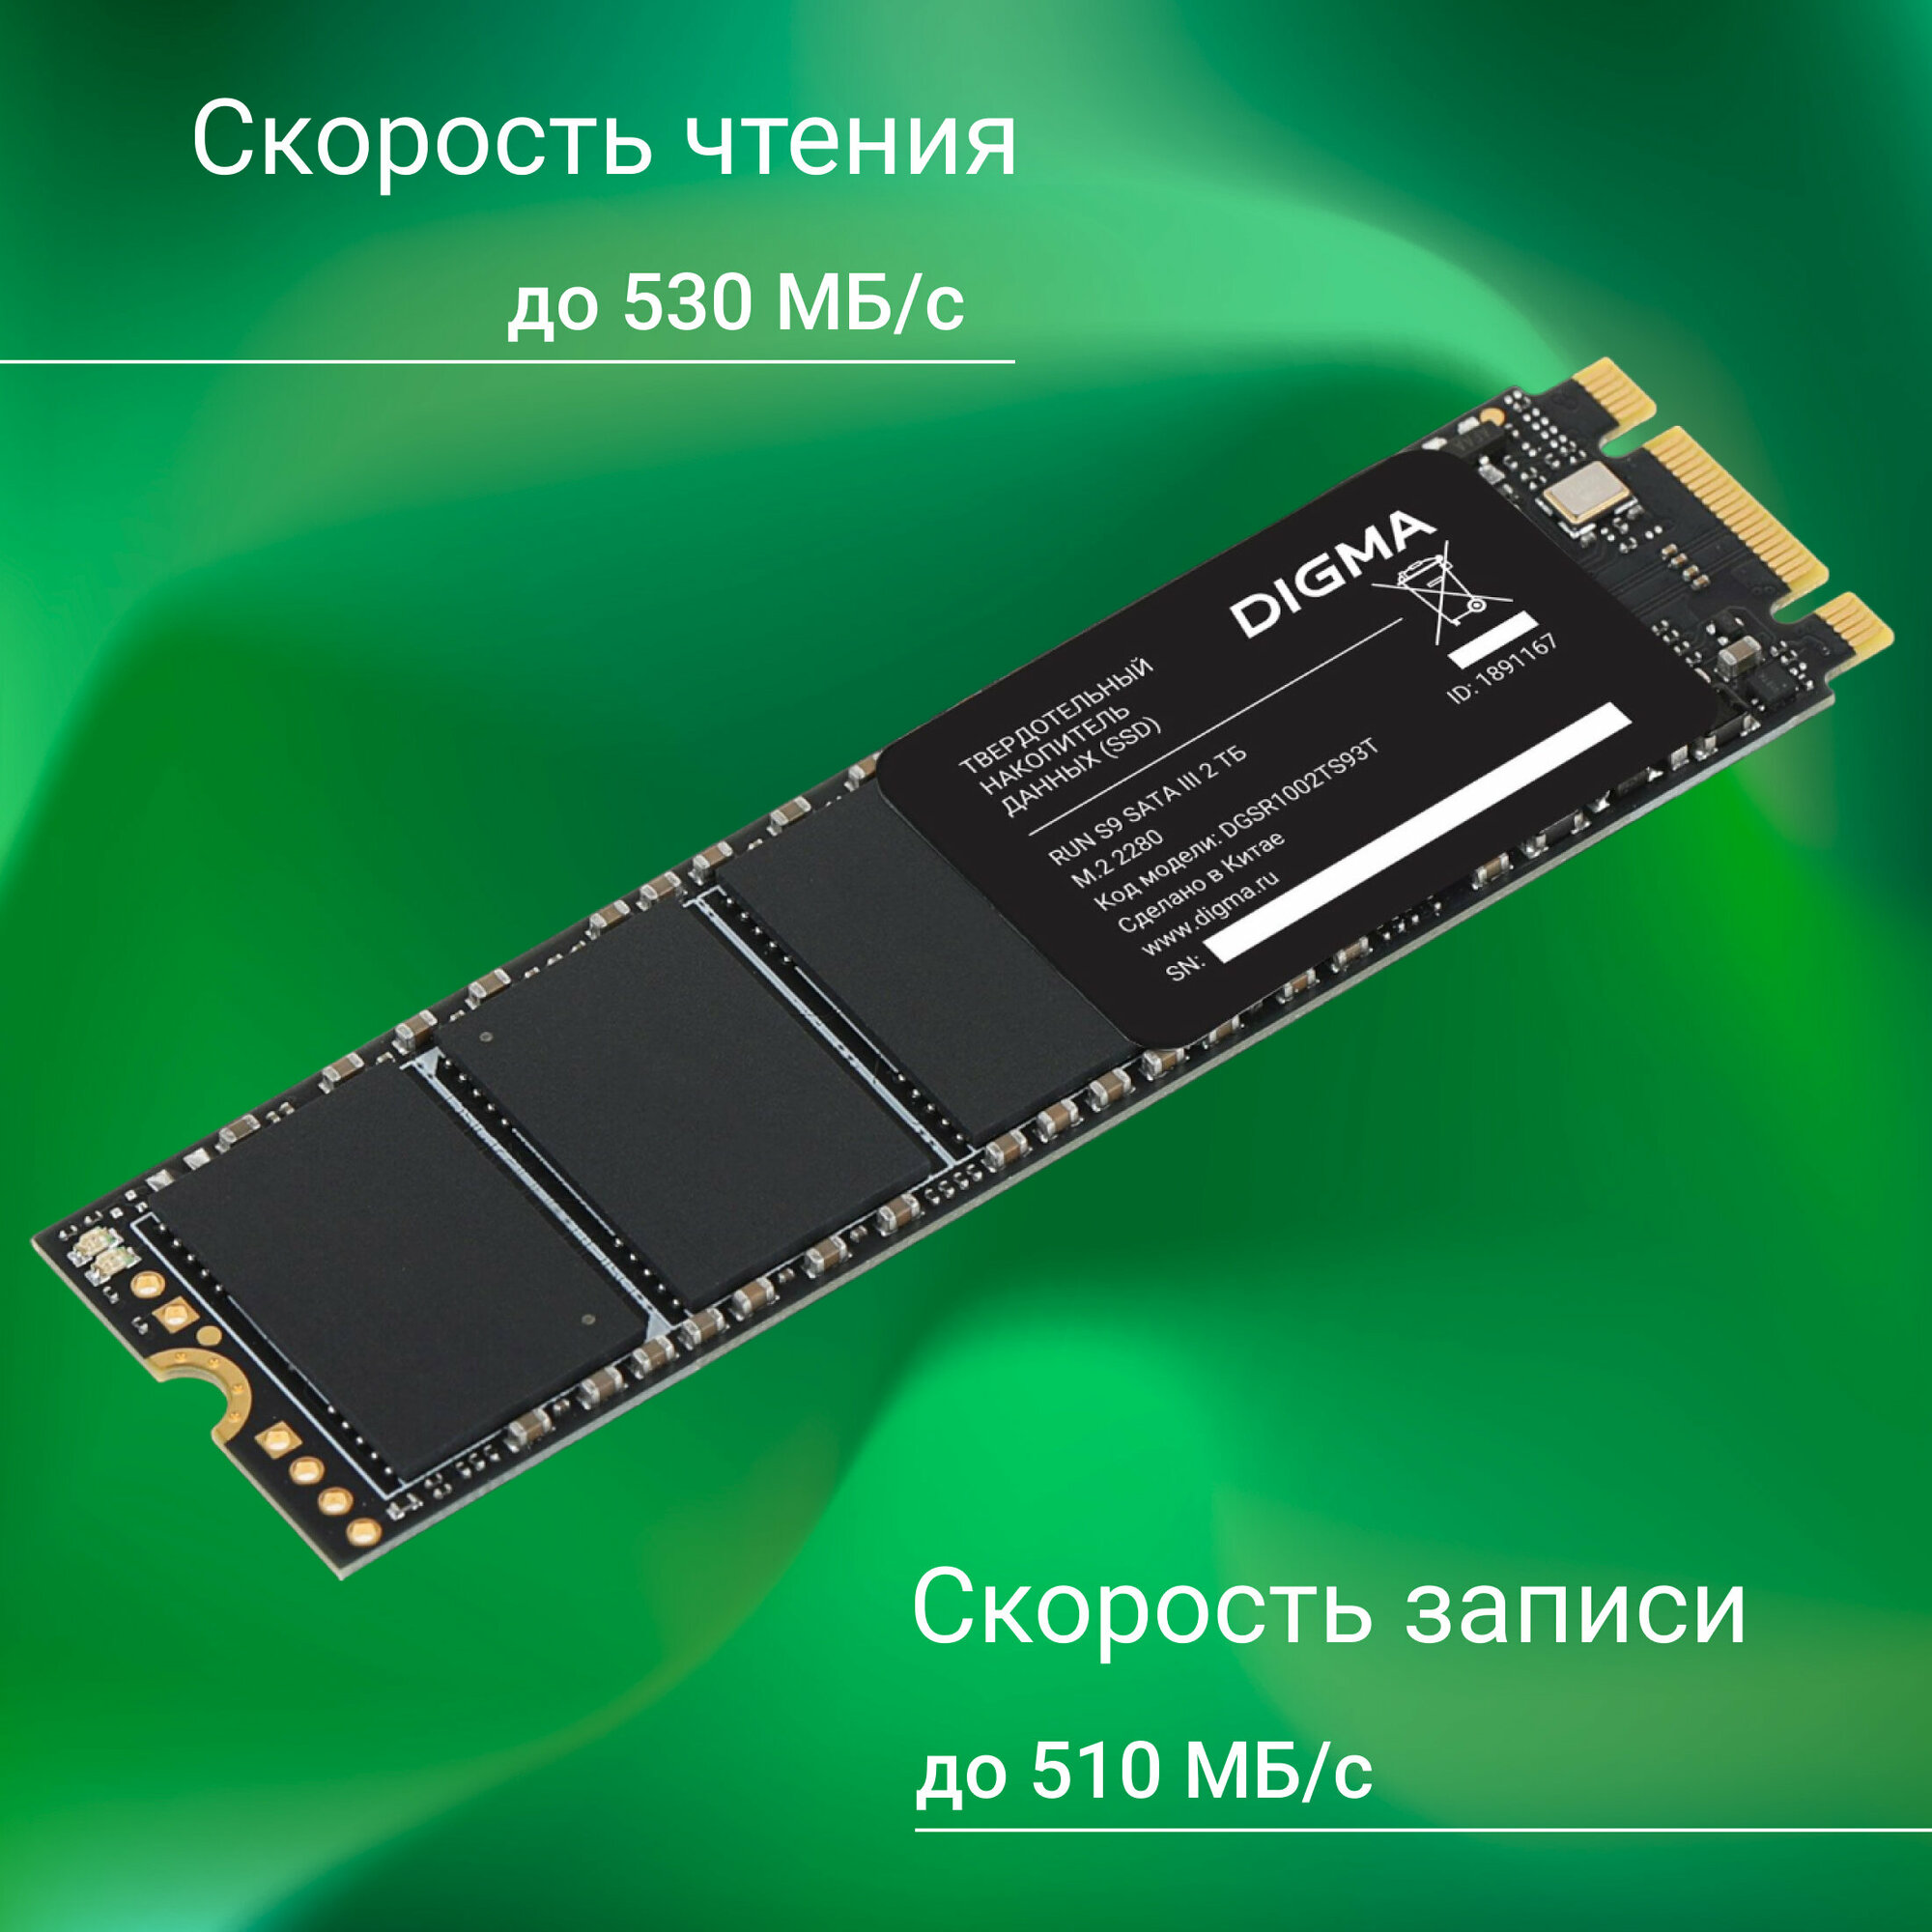 SSD M.2 накопитель Digma - фото №8